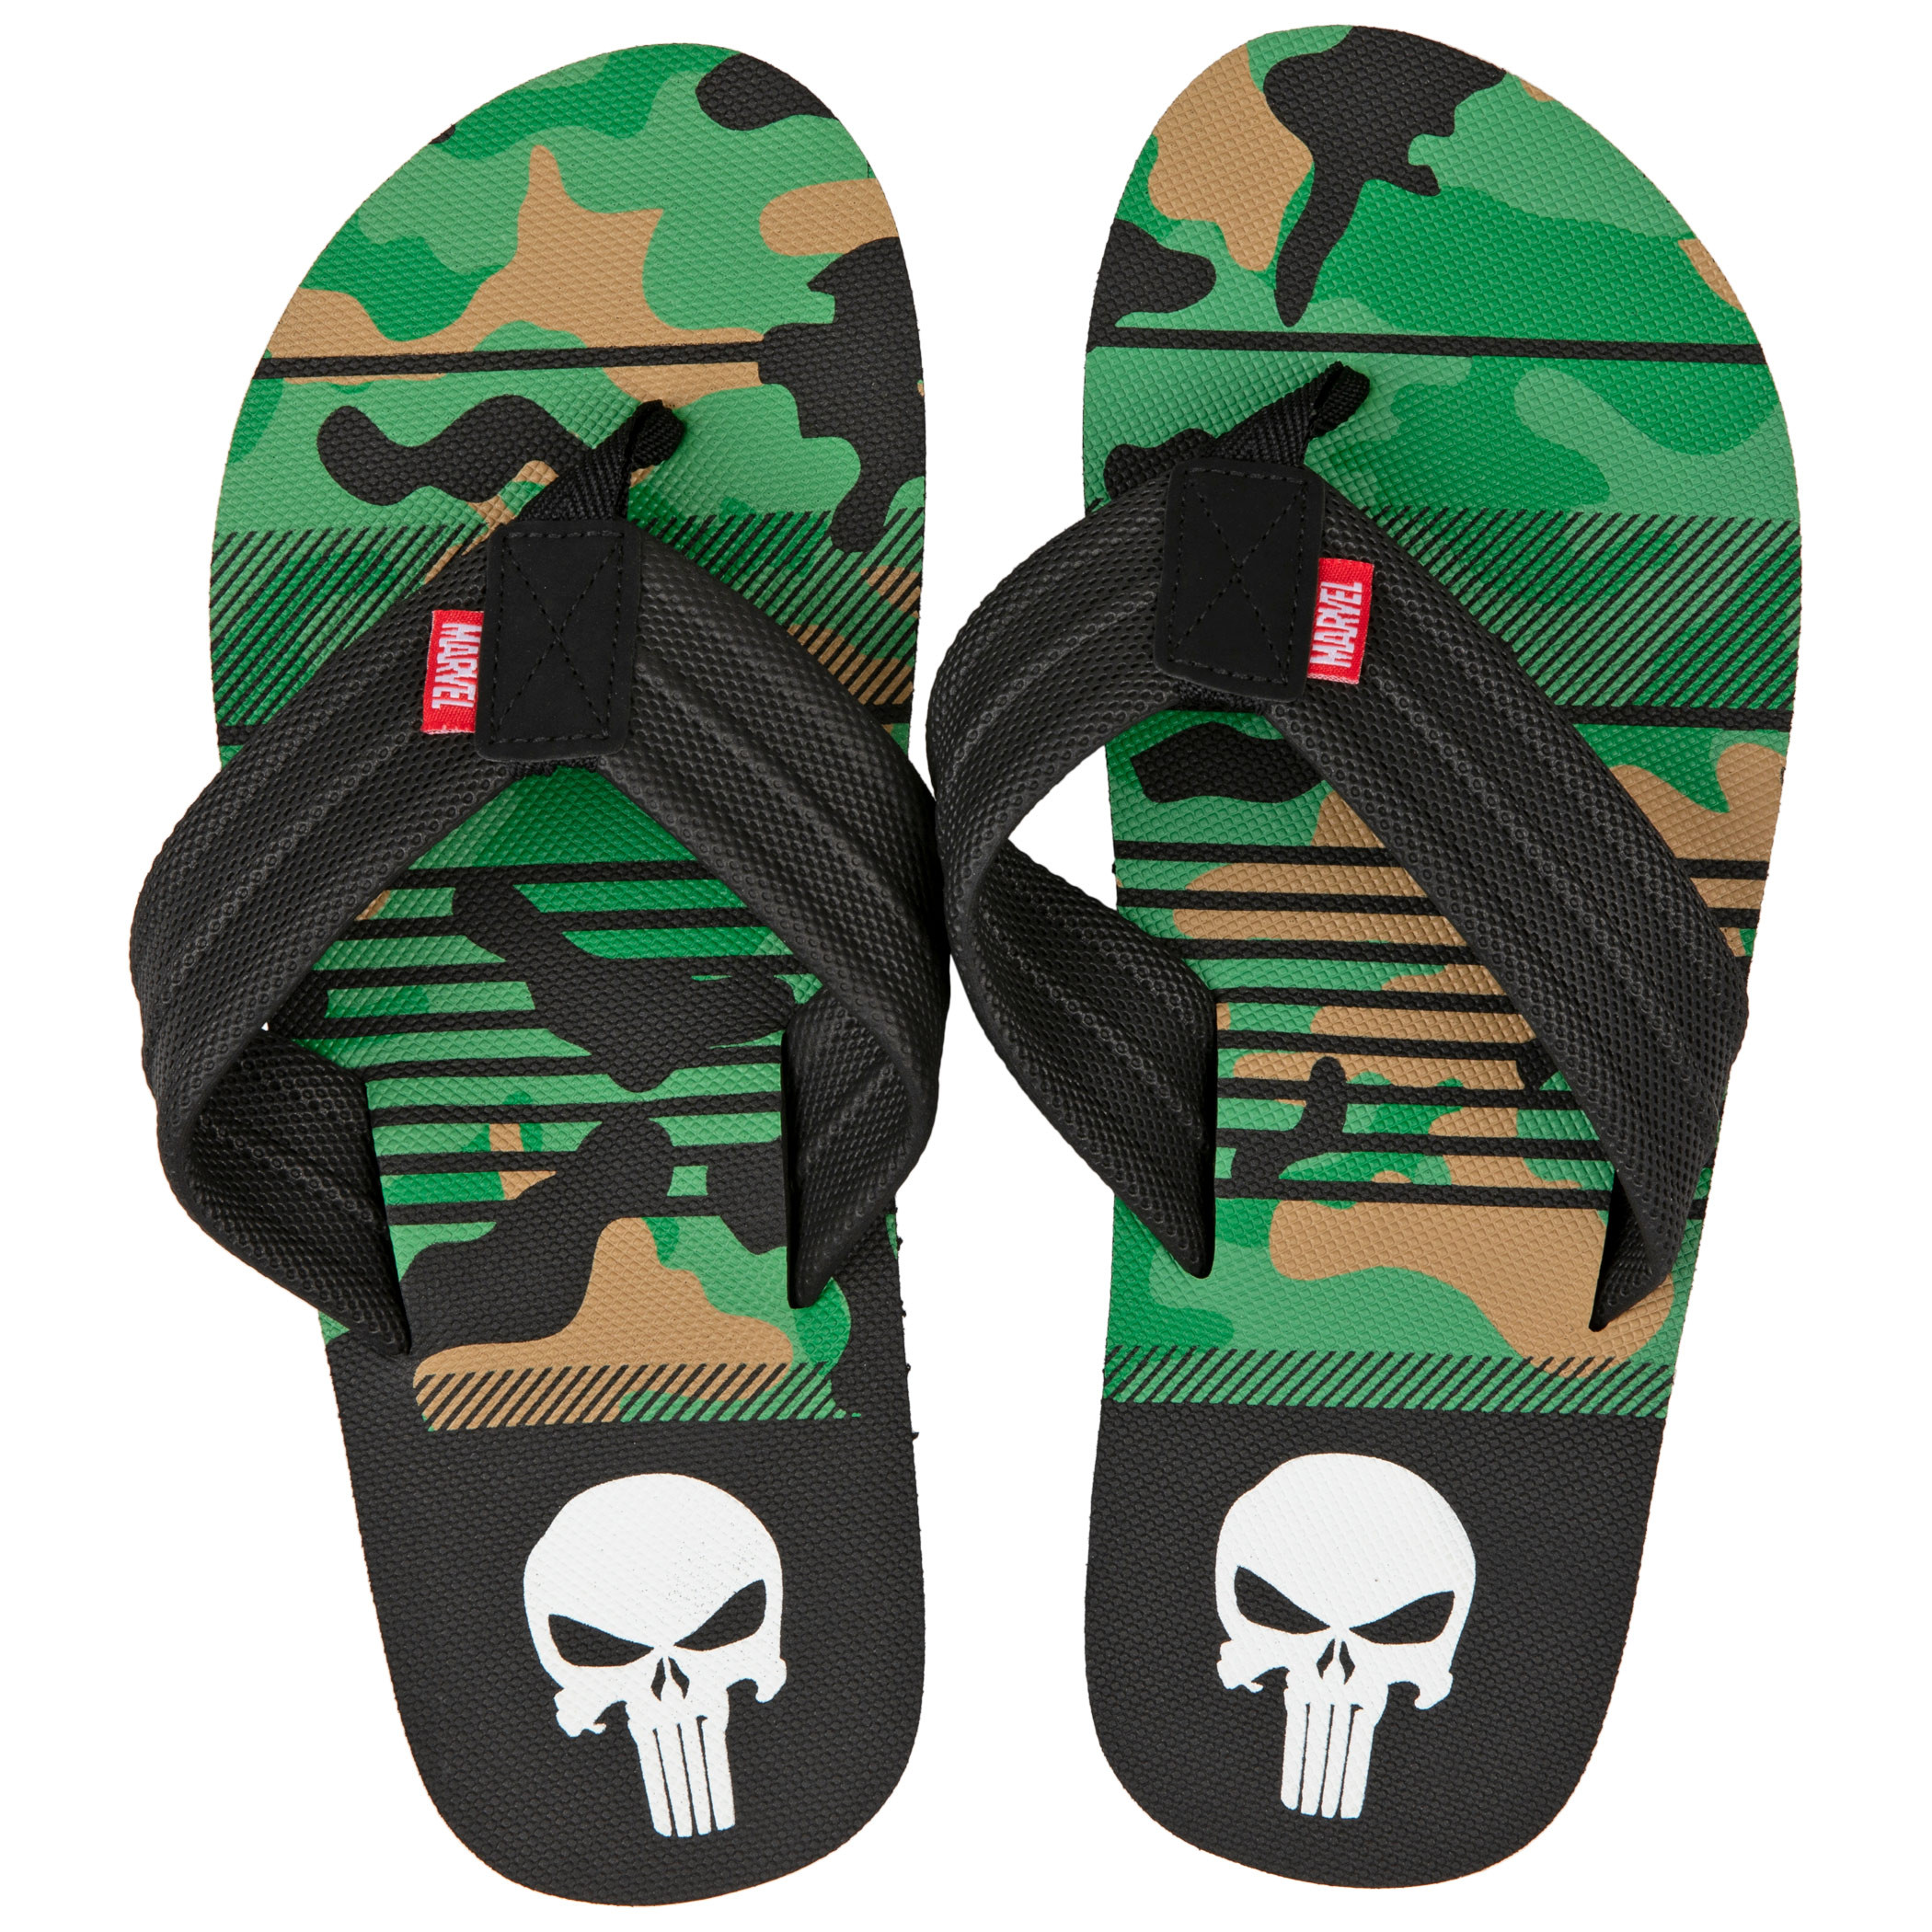 The Punisher Marvel Camo Flip Flop Sandals